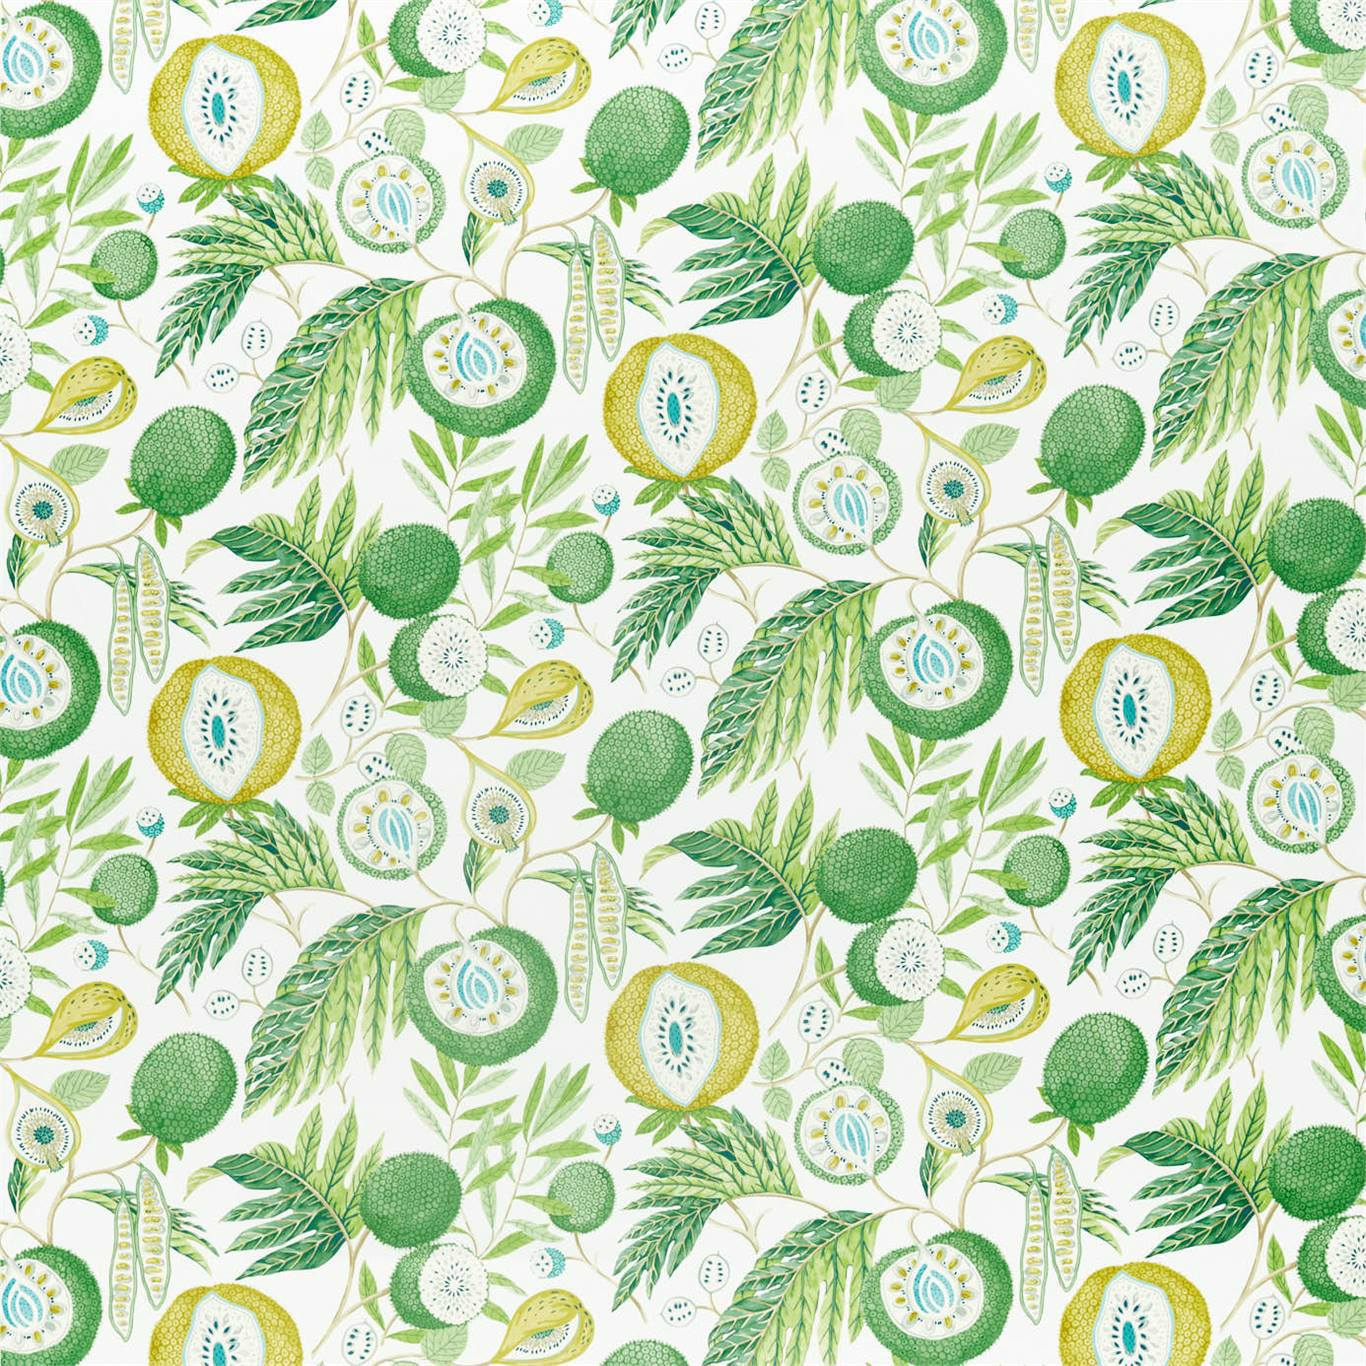 Jackfruit Jackfruit Botanical Green Fabric by SAN